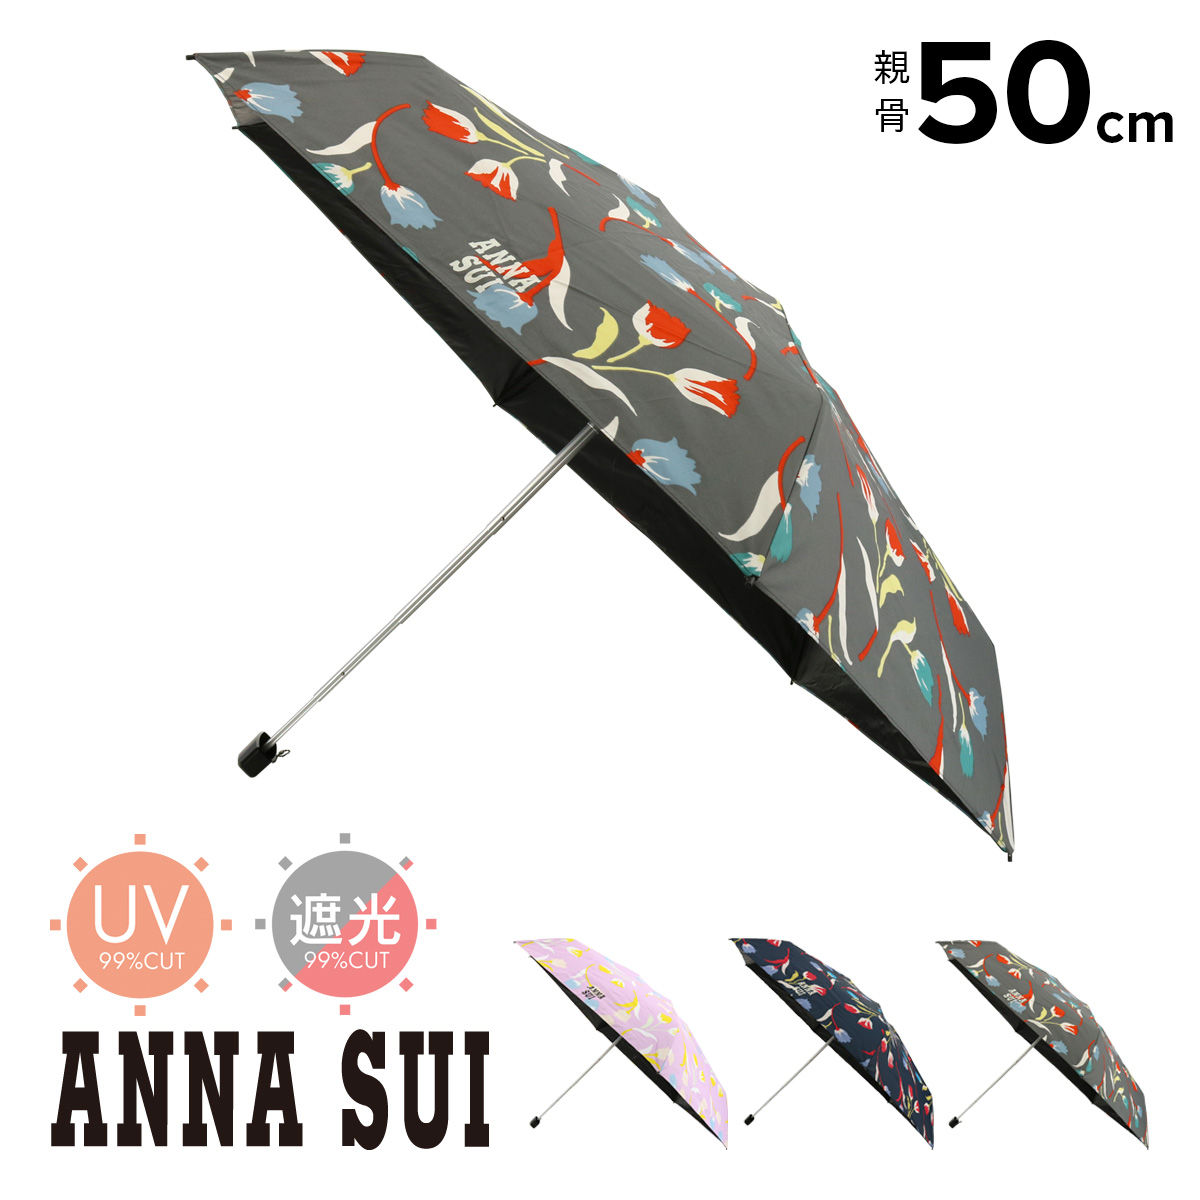 アナスイ 折りたたみ傘 ミニ傘 レディース フラワー 1AS27012-12 ANNA SUI 晴雨兼用 雨傘 日傘 遮光 UVカット 遮熱 花柄